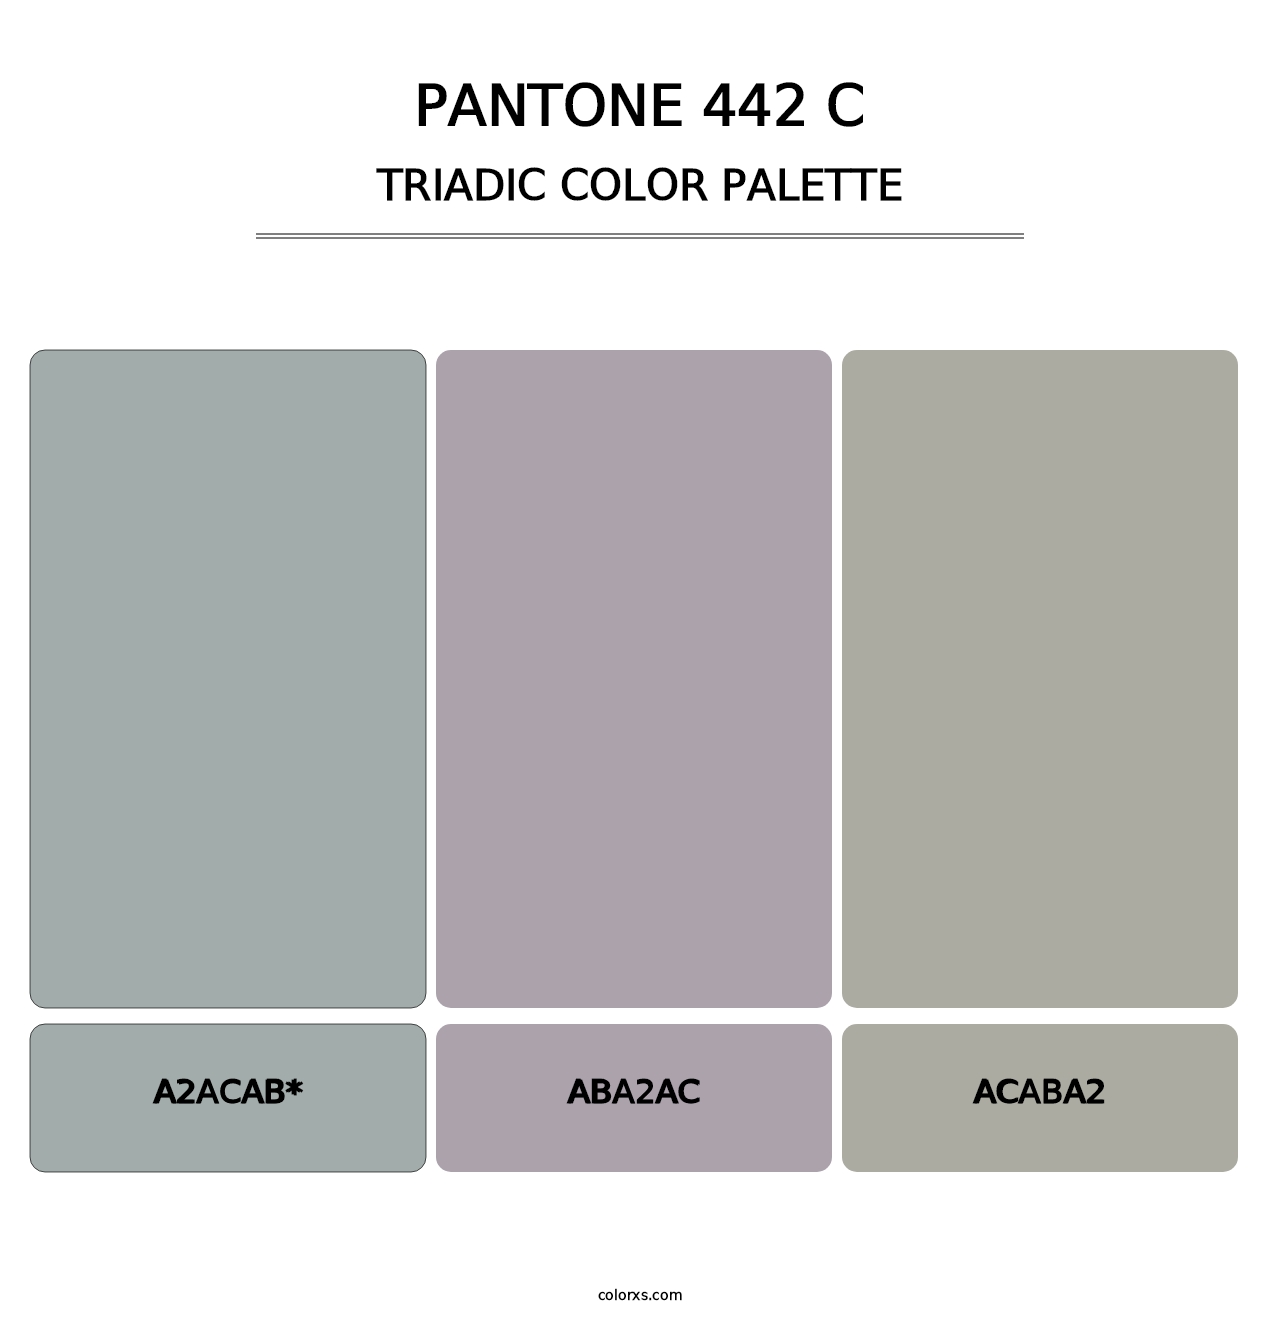 PANTONE 442 C - Triadic Color Palette